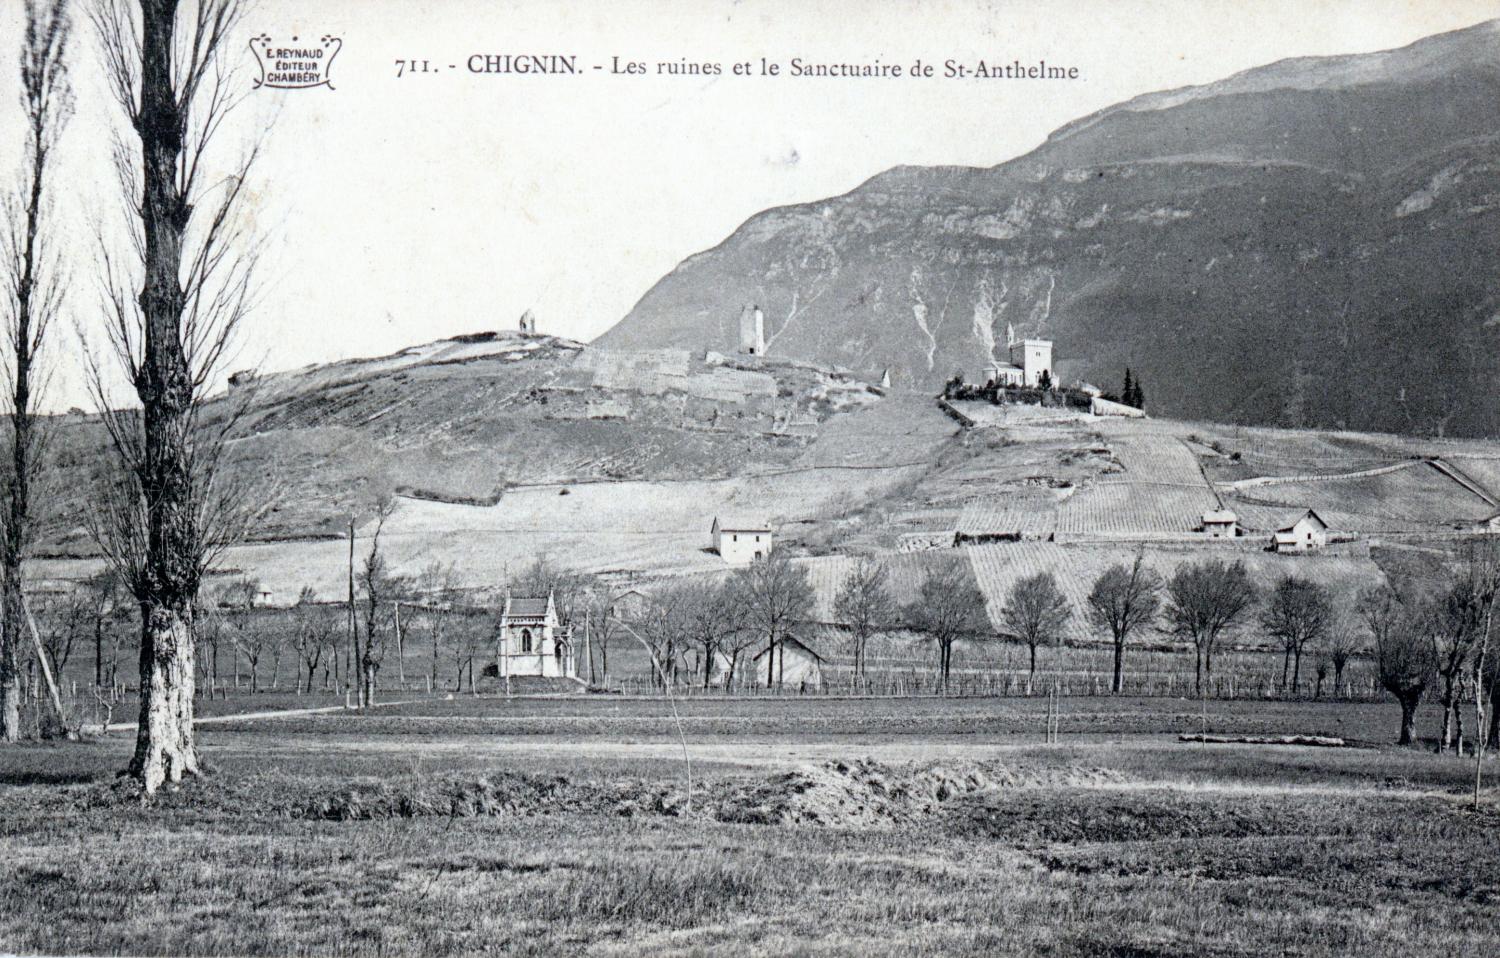 Chignin. - Les ruines et le Sanctuaire de St-Anthelme